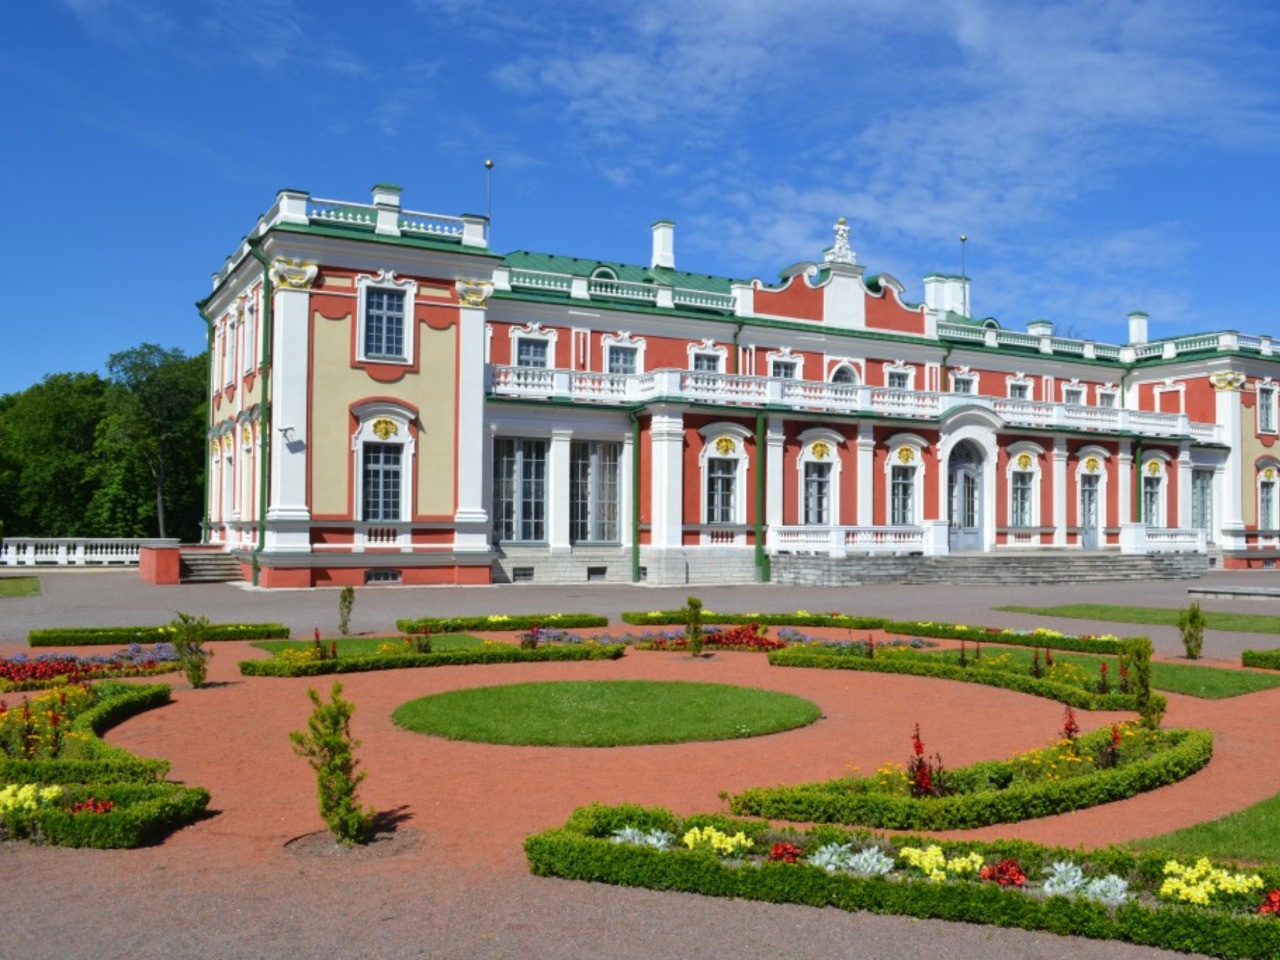 Великолепие царского парка “Кадриорг” в Таллине | Цена 54€, отзывы, описание экскурсии